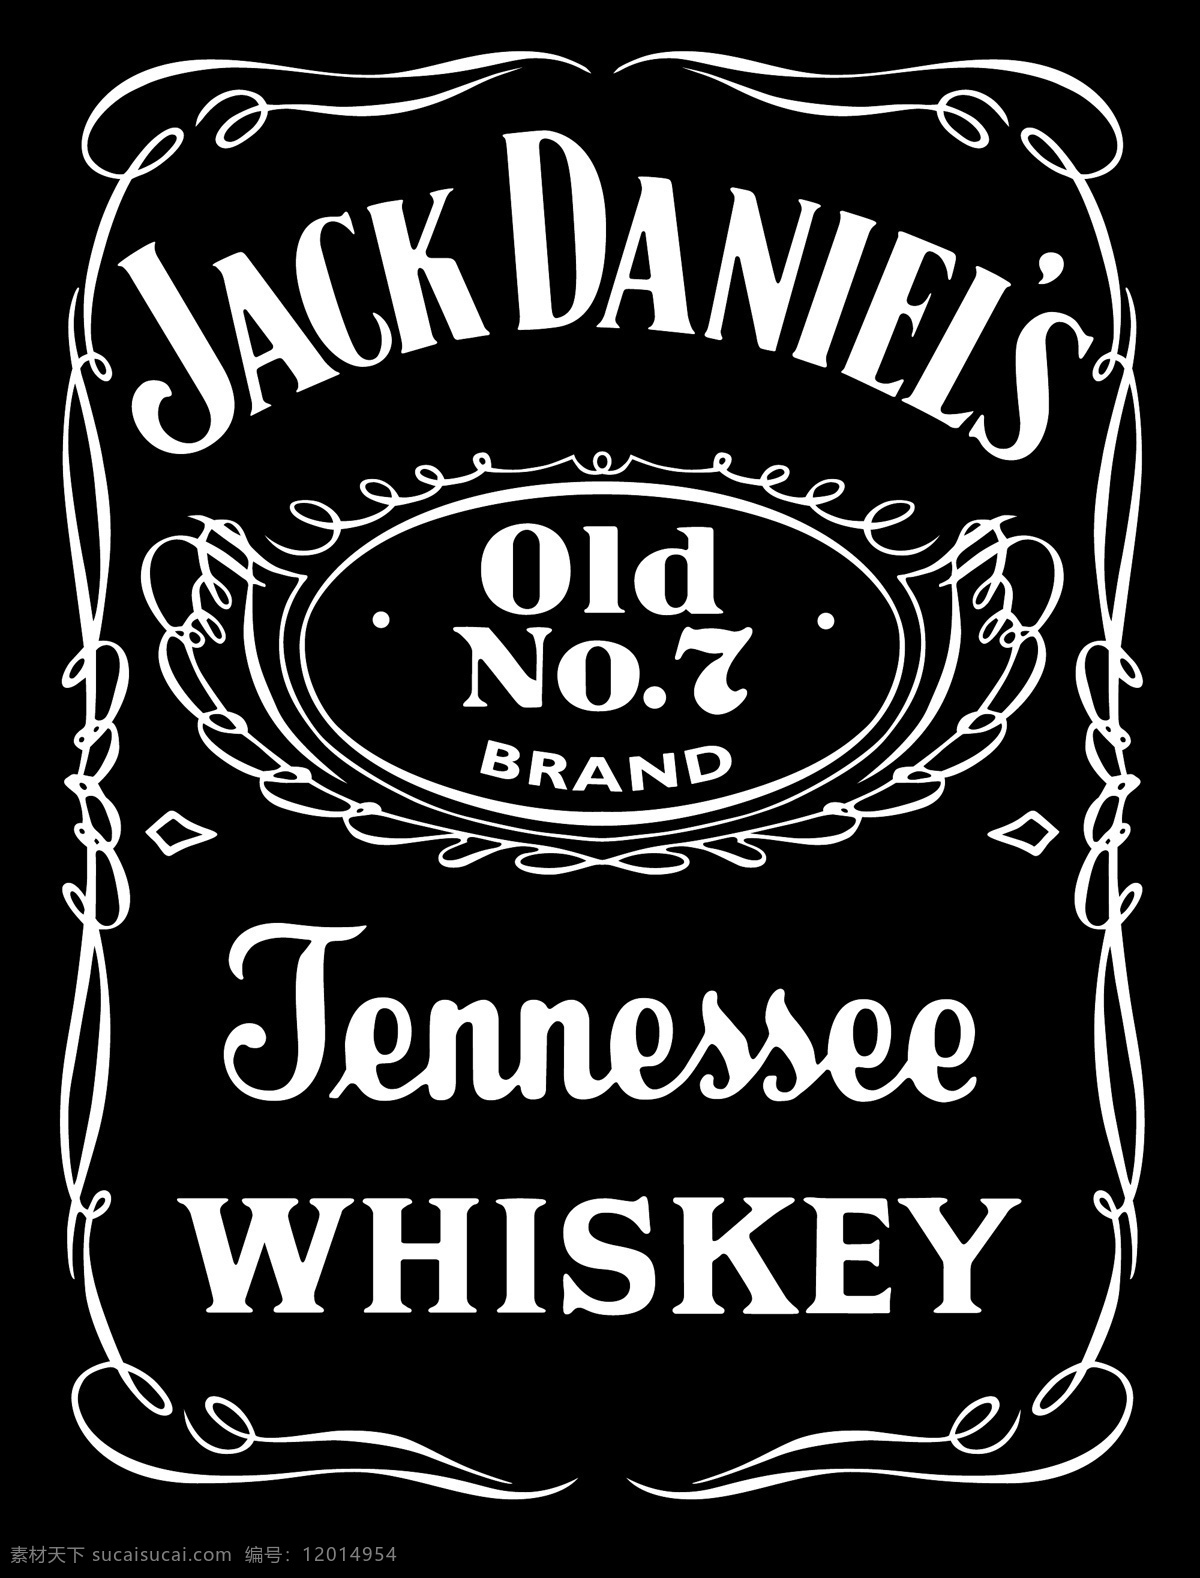 杰克 丹尼尔 田纳西 威士忌 免费 标志 自由 psd源文件 logo设计